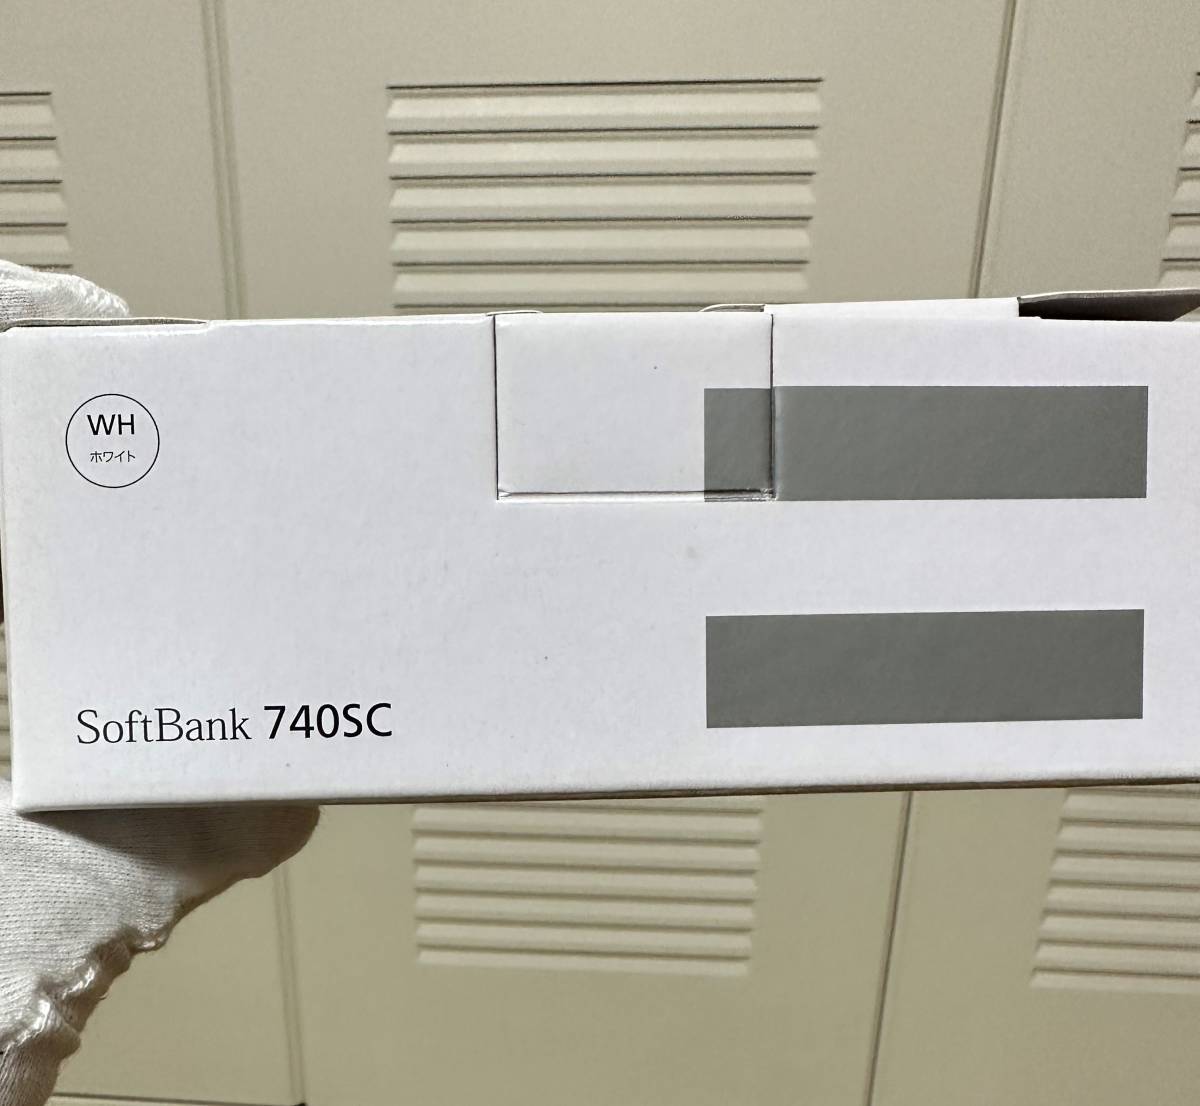 SoftBank 740SC ホワイト 白ロム 赤外線通信 サムスン電子 SAMSUNG プリモバイル 海外使用可機種 ガラケー プリペイド携帯 プリケー_画像4